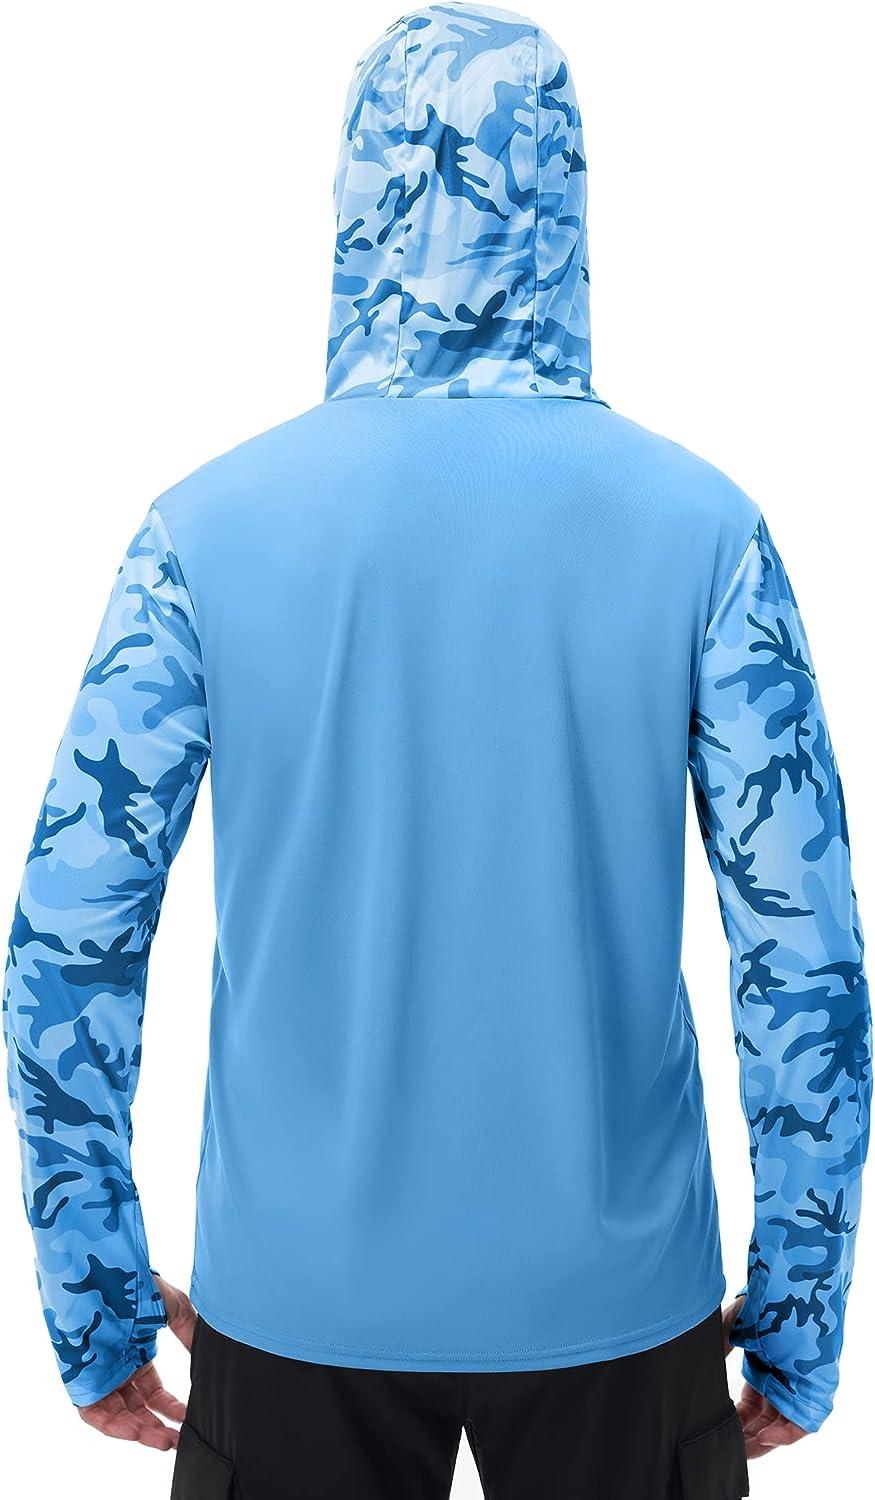 FISHEAL Men's Performance Fishing Hoodie Shirt - UPF 50+ Camo Long